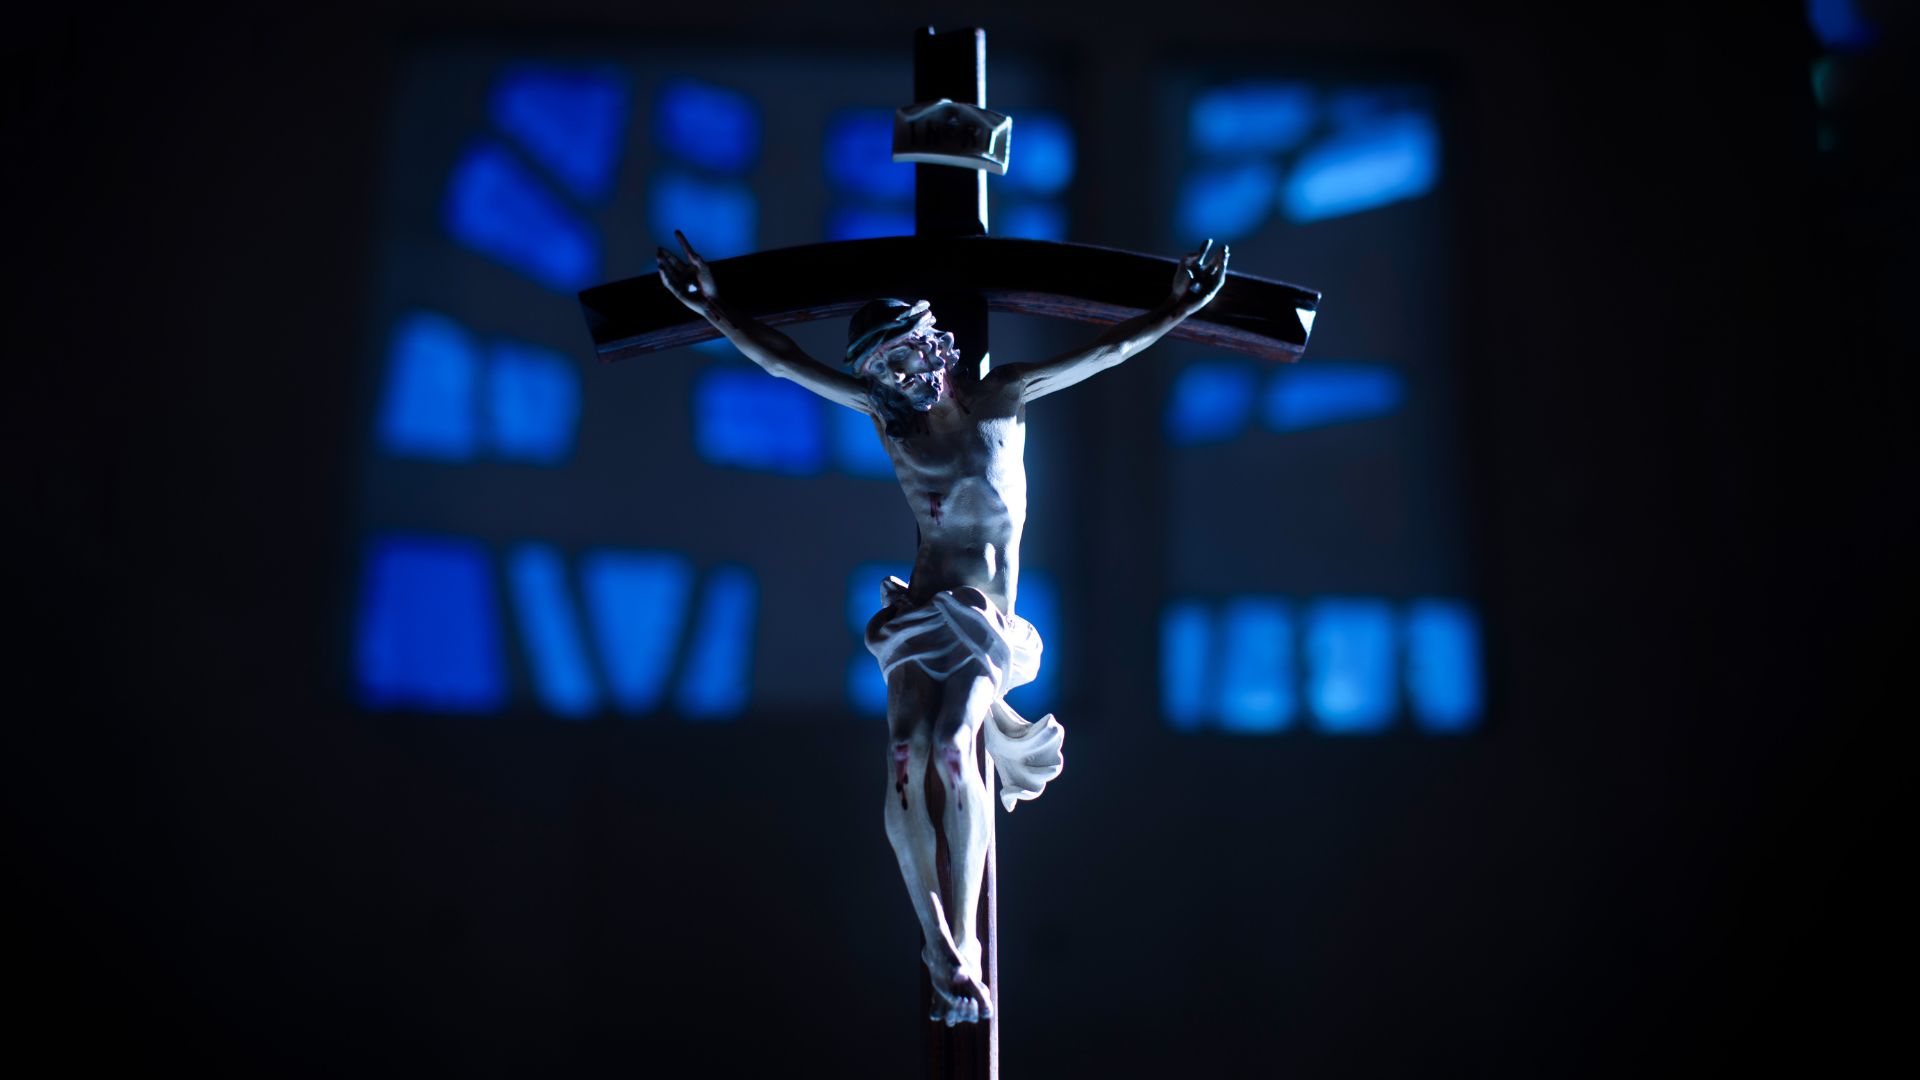 Fotos de semana santa en la PUCP: Crucijifo plateado con detalles, con una iluminación azul que pasa a través de vitrales.